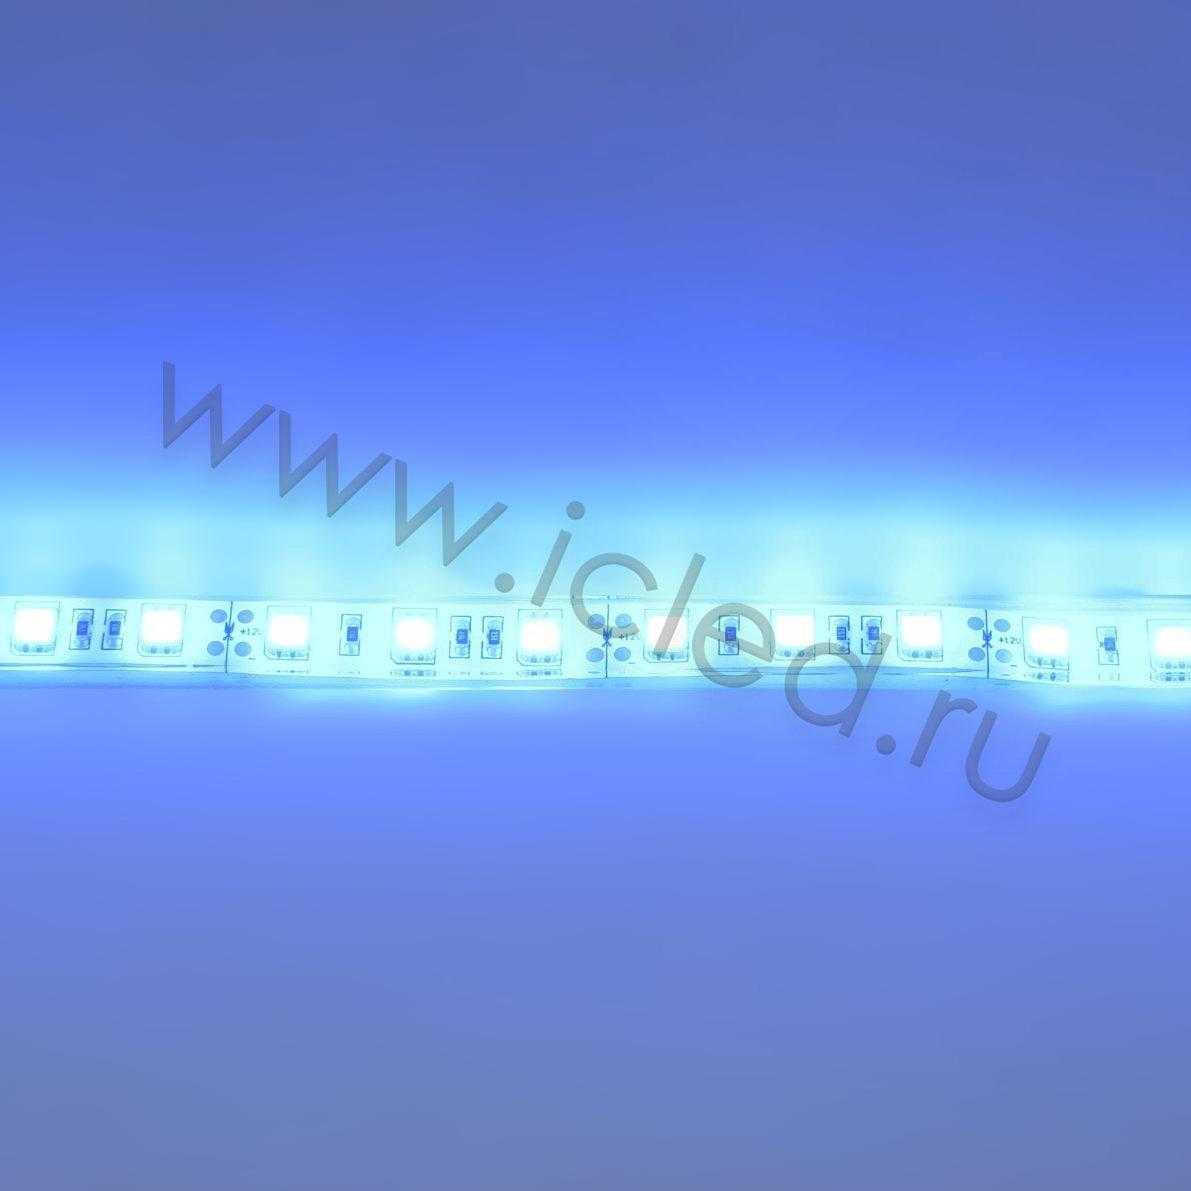 Влагозащищенные светодиодные ленты Светодиодная лента Standart PRO class, 5050, 60led/m, Blue, 12V, IP68 Icled